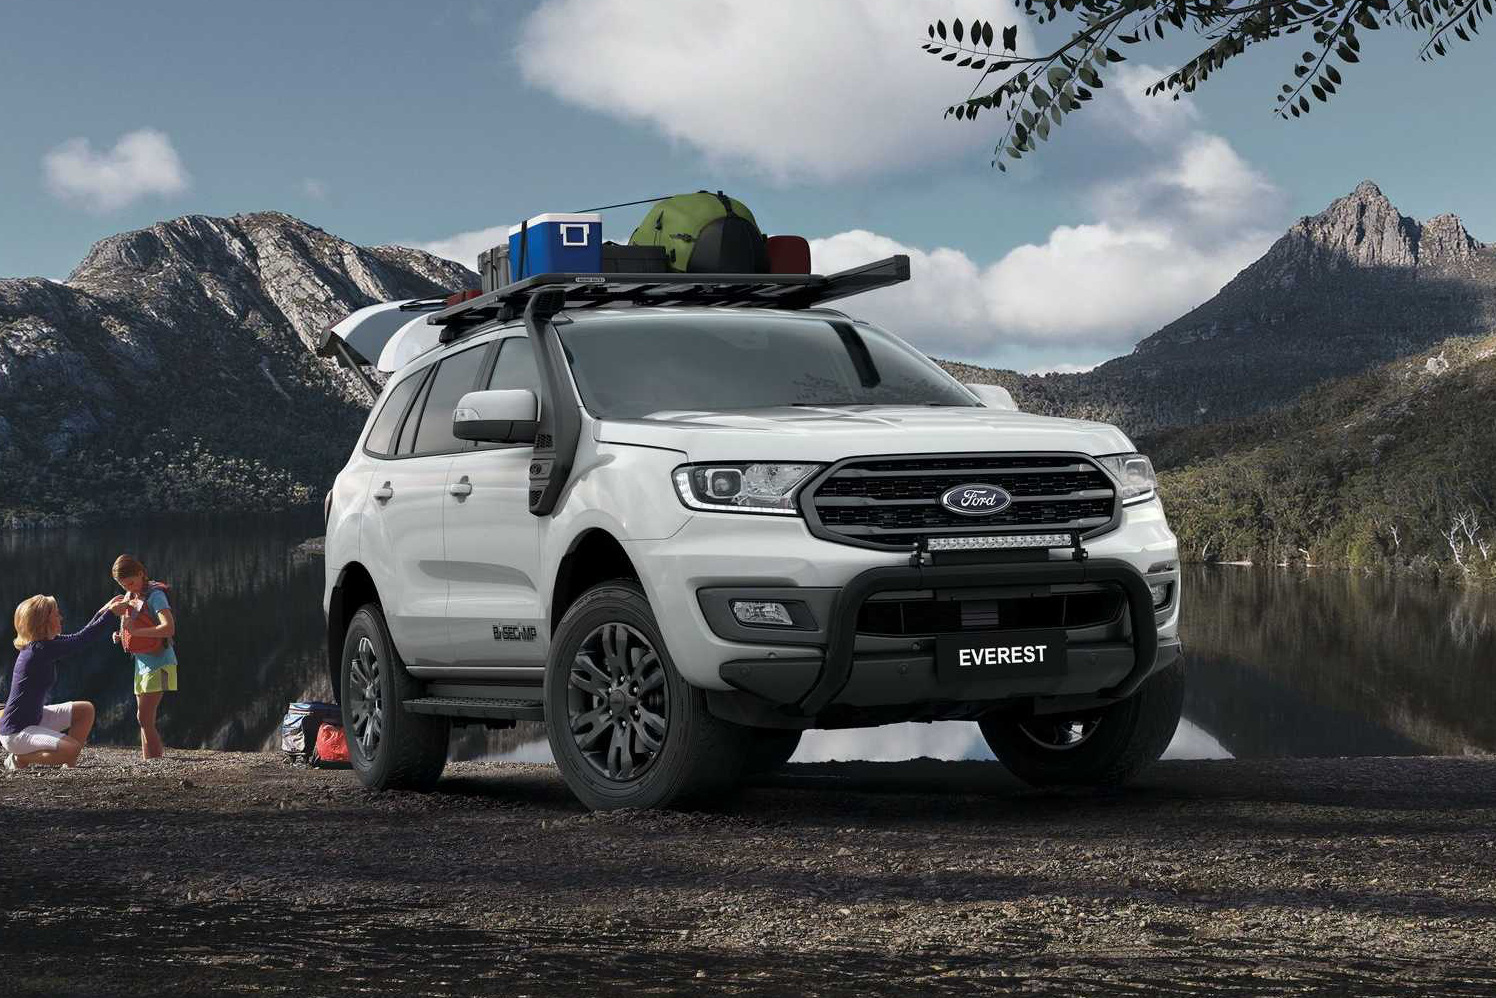 Ford Everest BaseCamp - SUV 7 chỗ chuẩn bài cho dân phượt, giá quy đổi từ 1 tỷ đồng